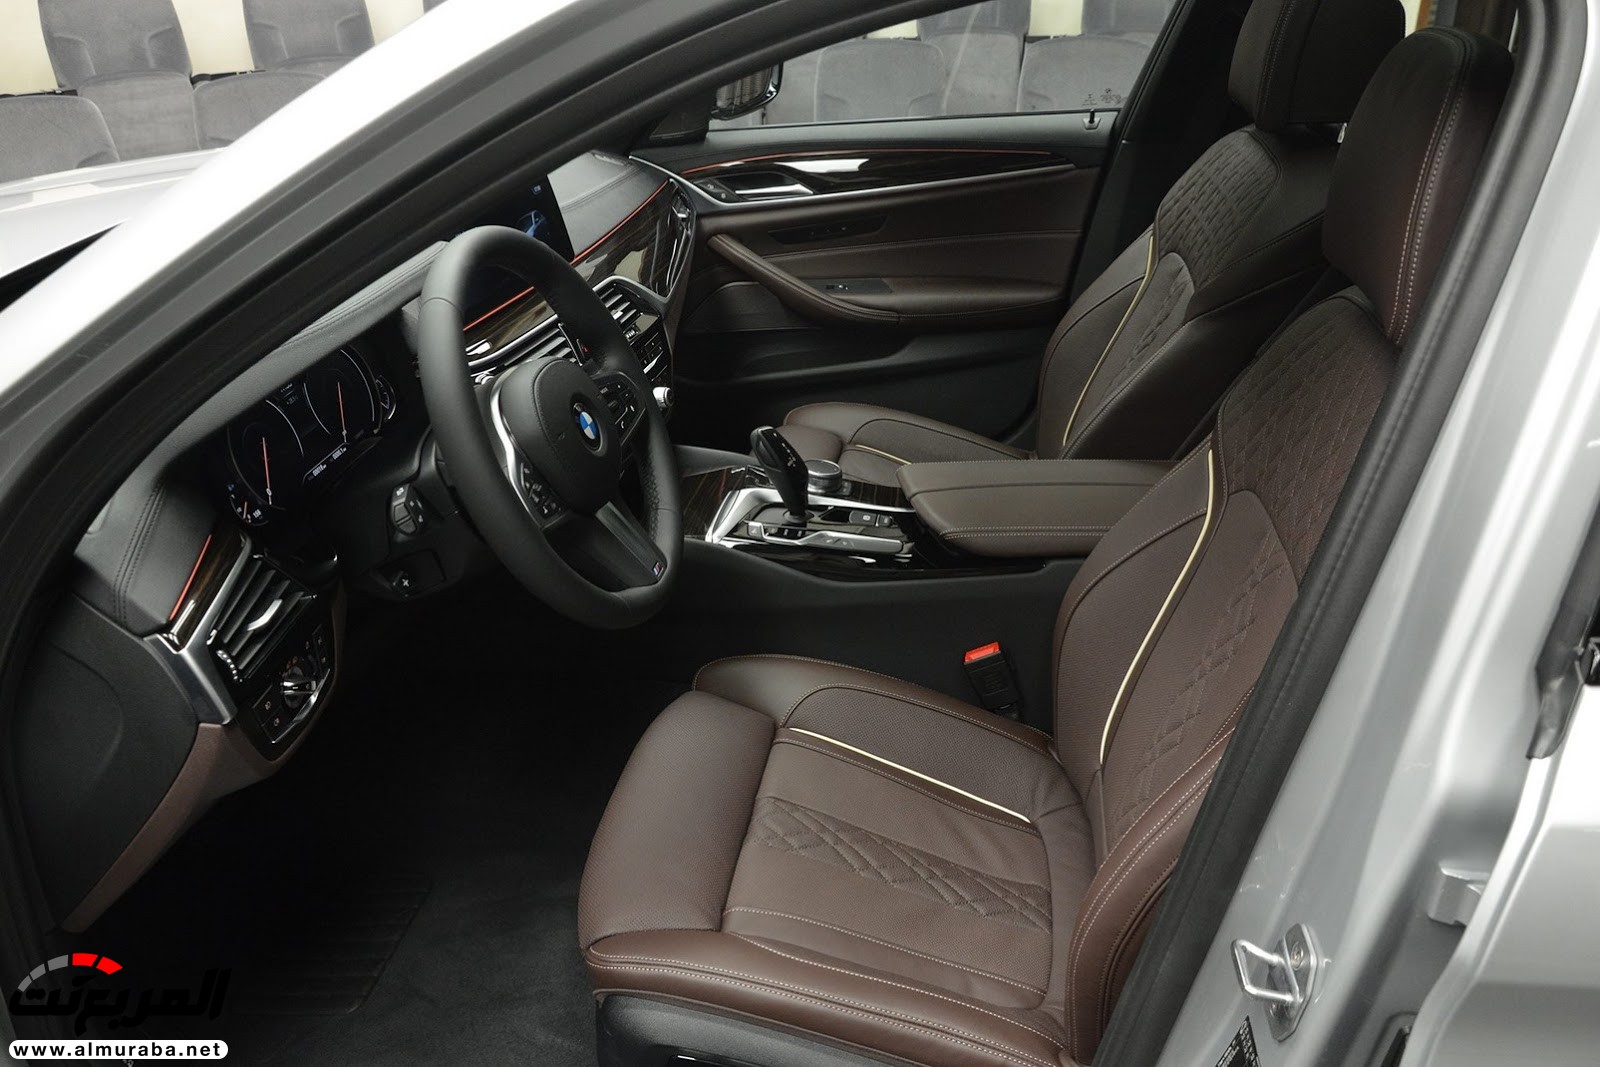 "بي إم دبليو" 540i الجديدة كلياً بتعديلات سبورت لاين معروضة بأبو ظبي BMW 11